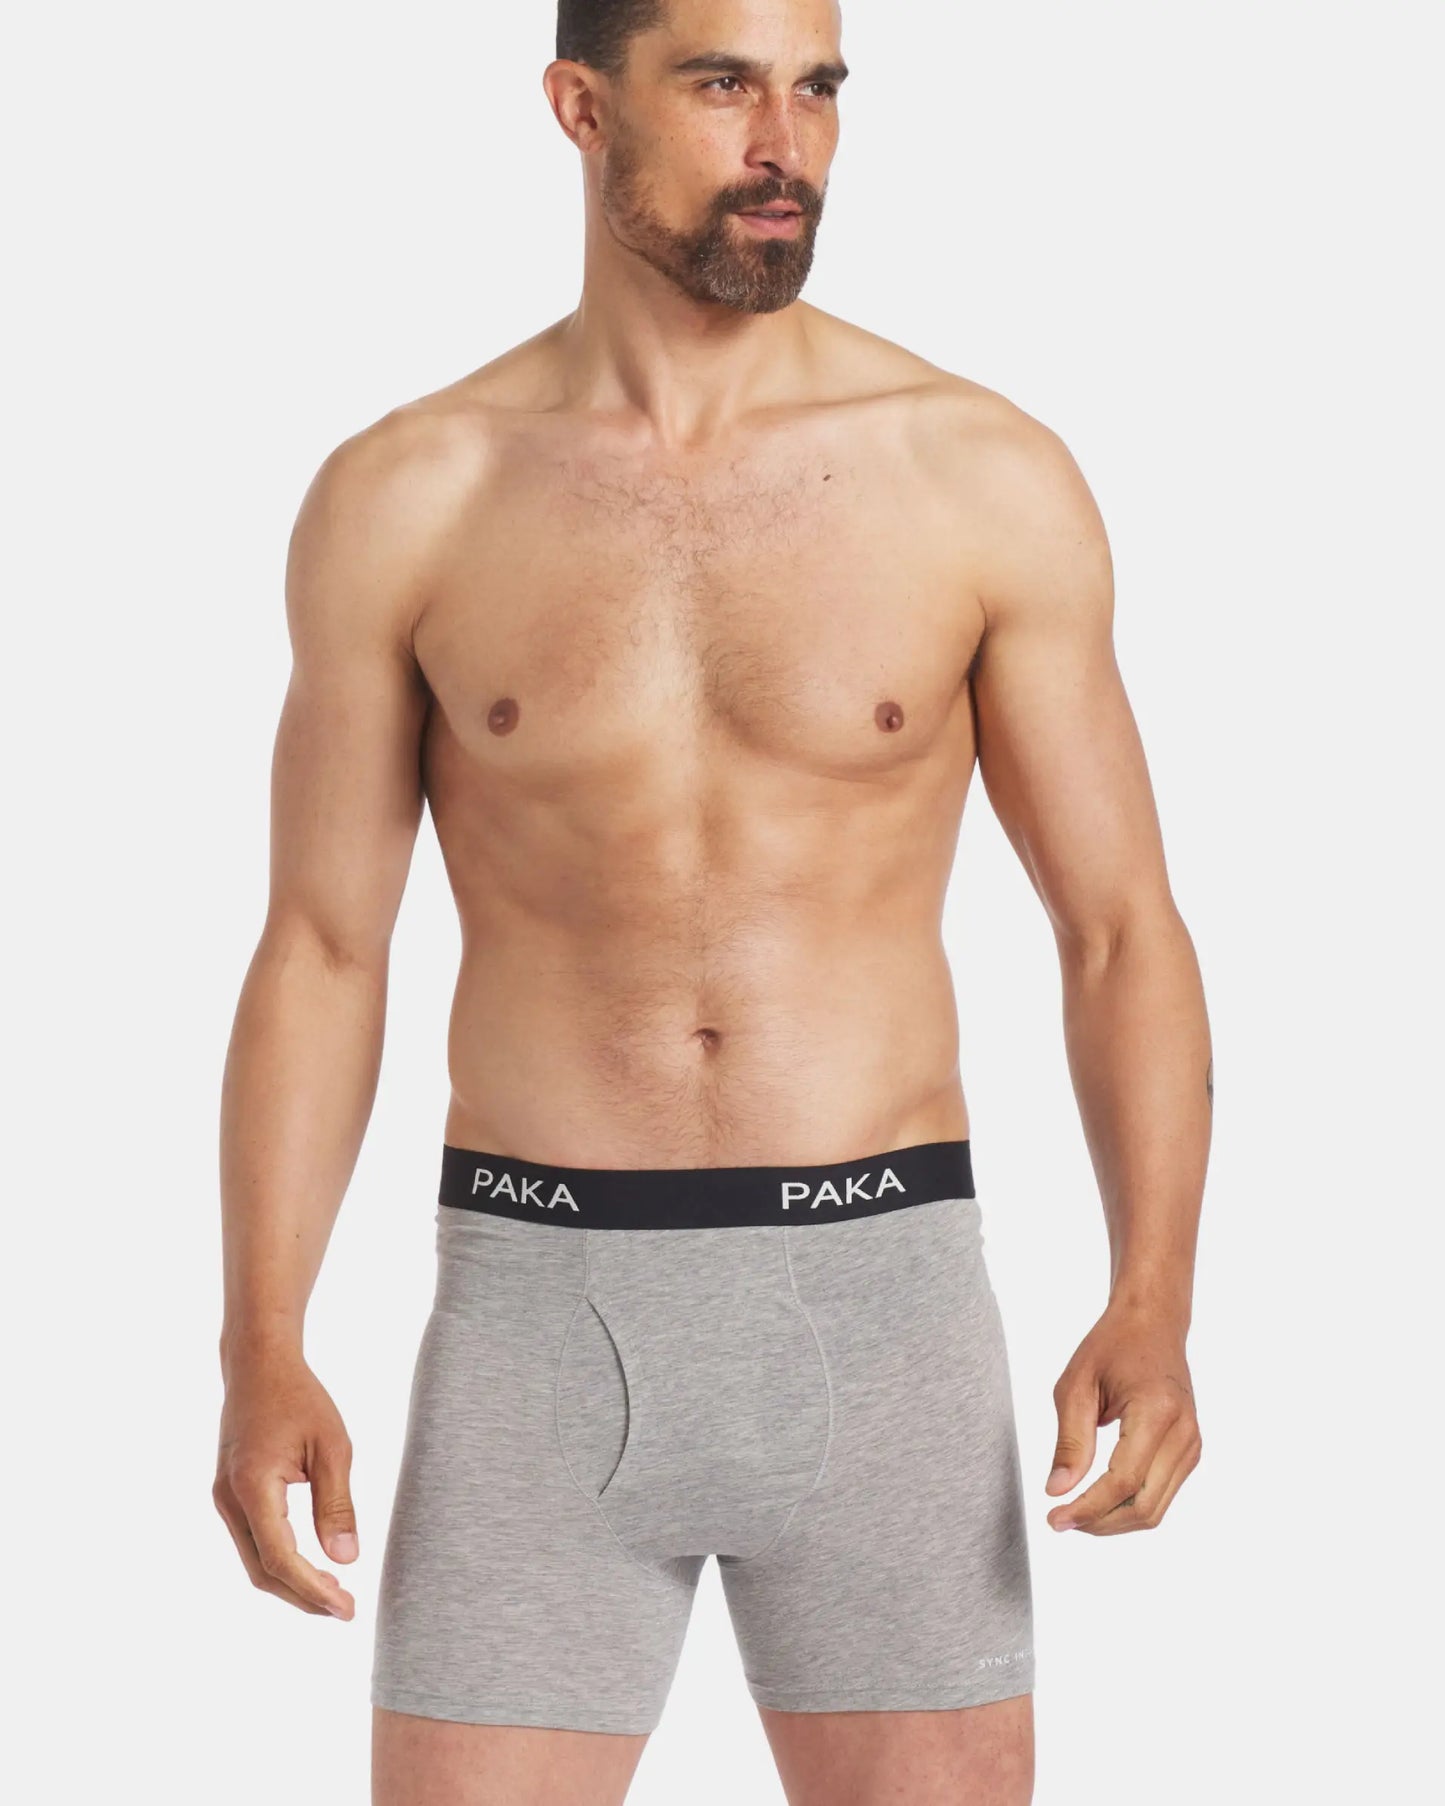 Mens grey alpaca underwear briefs on model